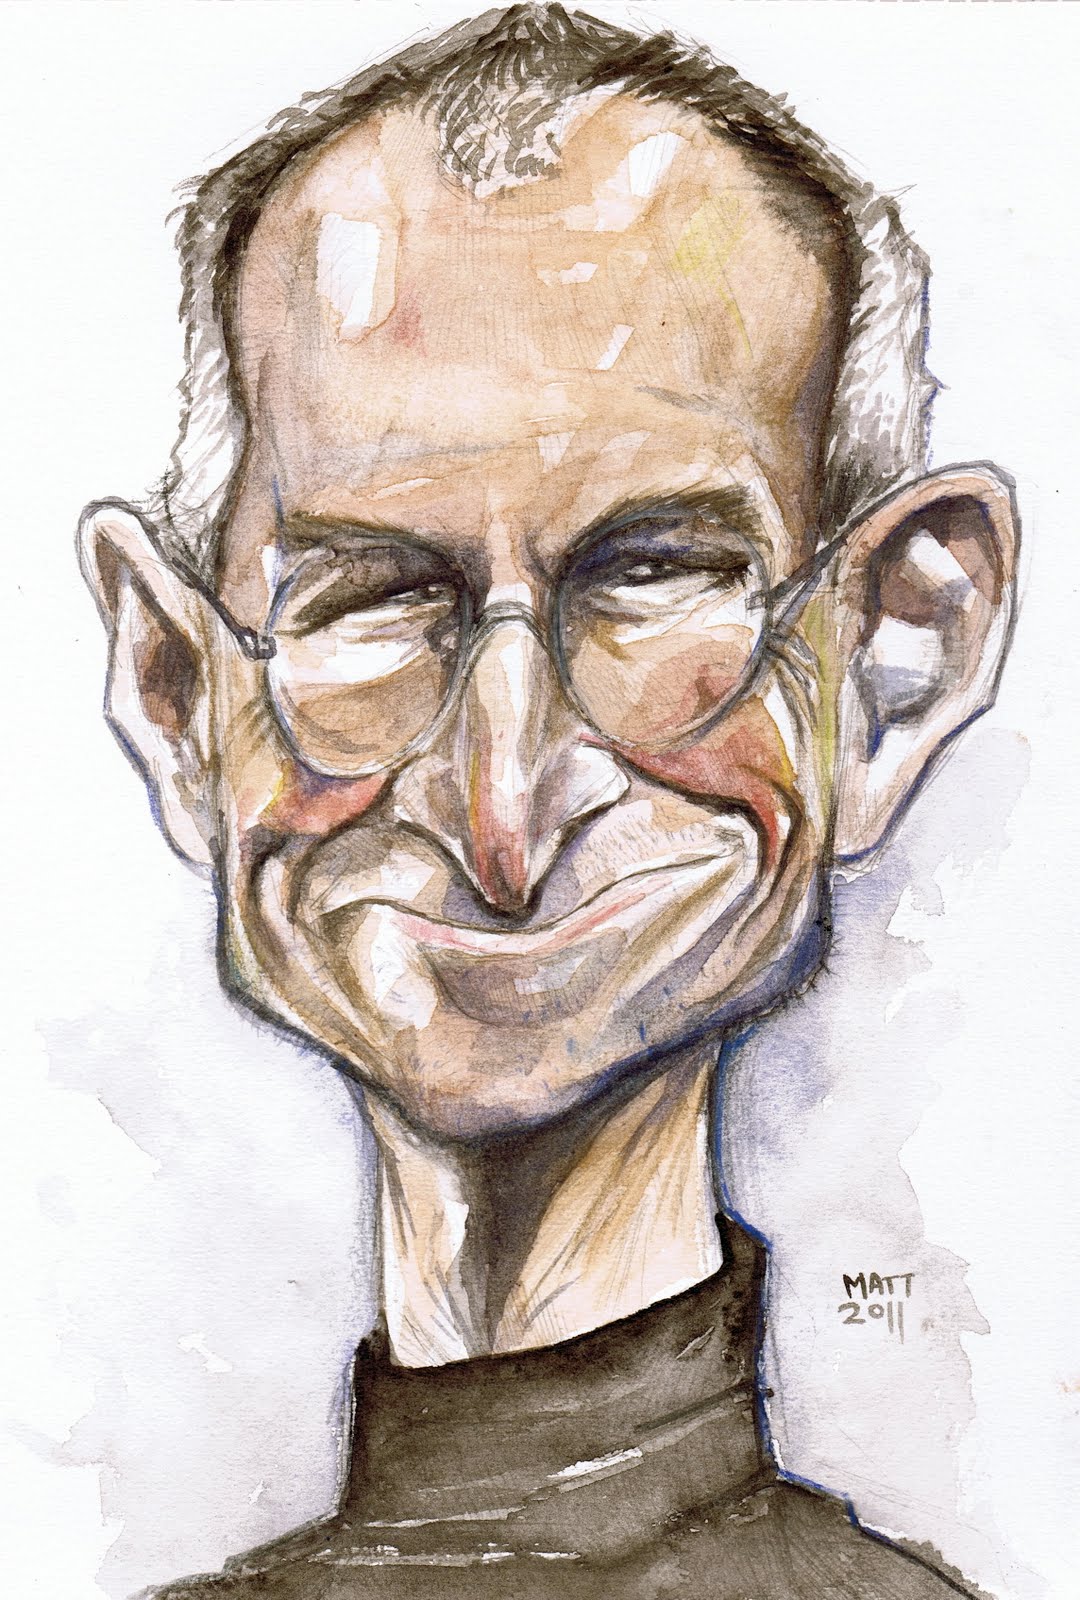 Matt Ryder Caricature: Steve Jobs - RIP